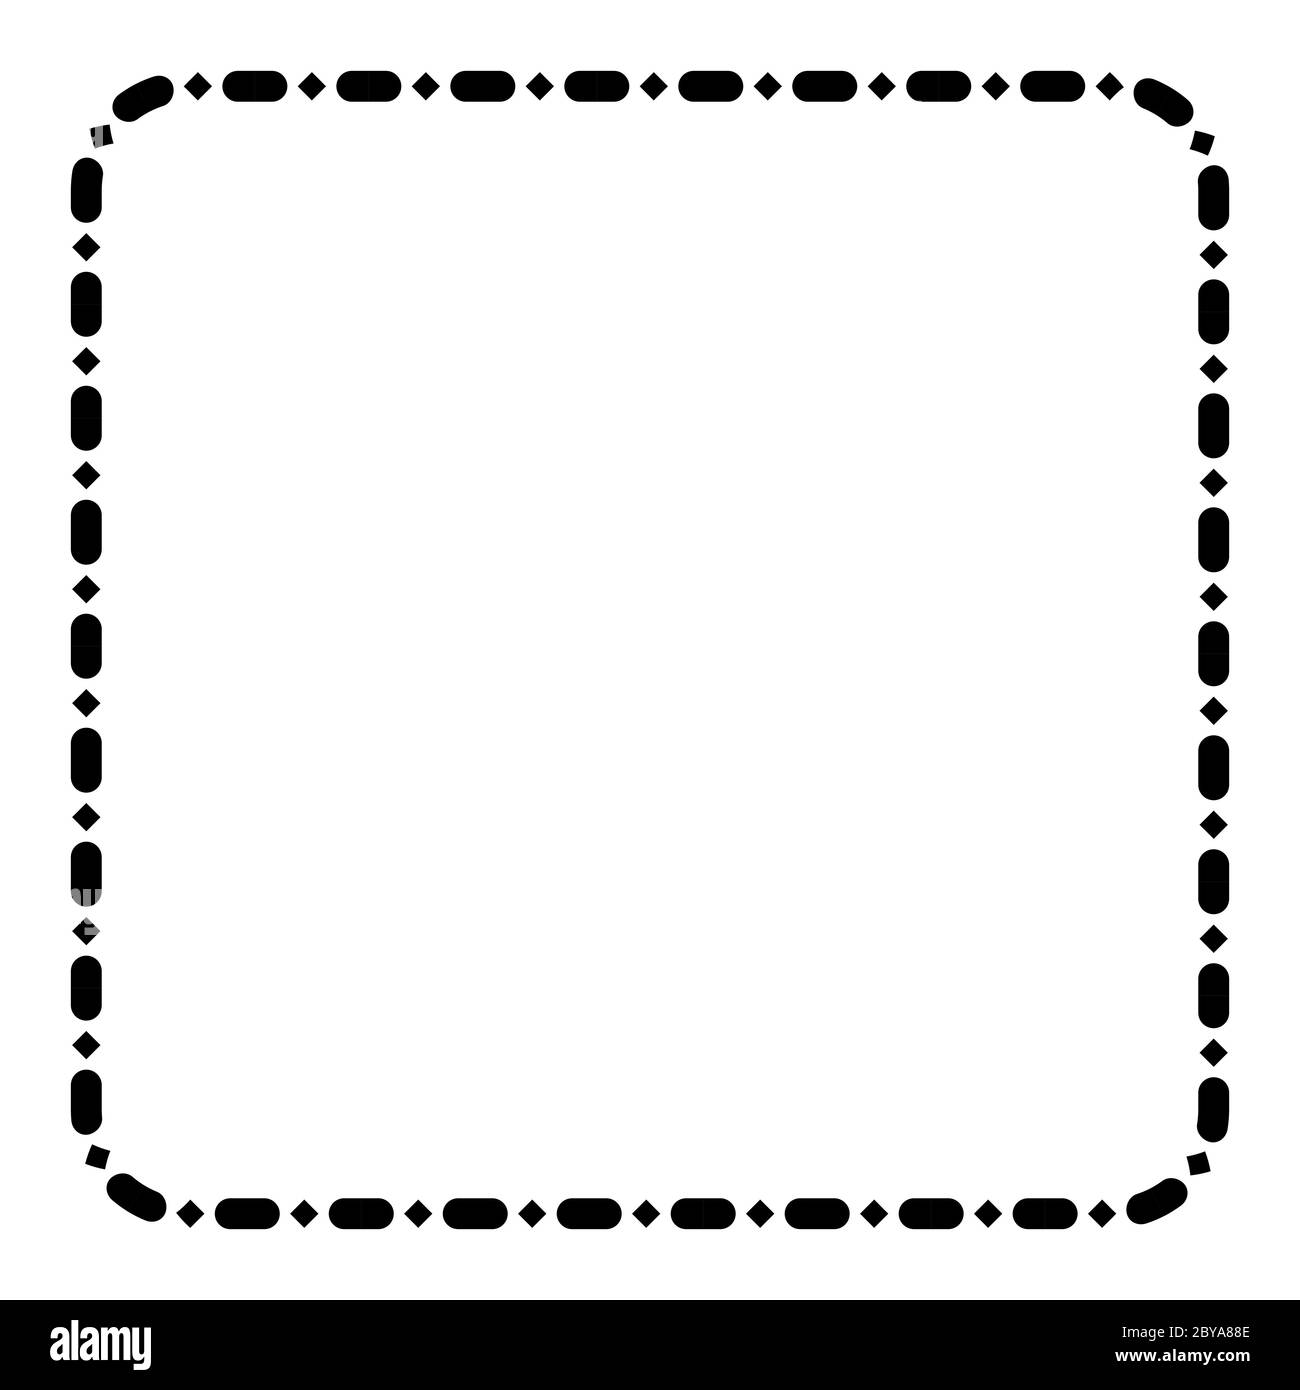 Marco cuadrado de esquina redonda vectorial, aislado en blanco